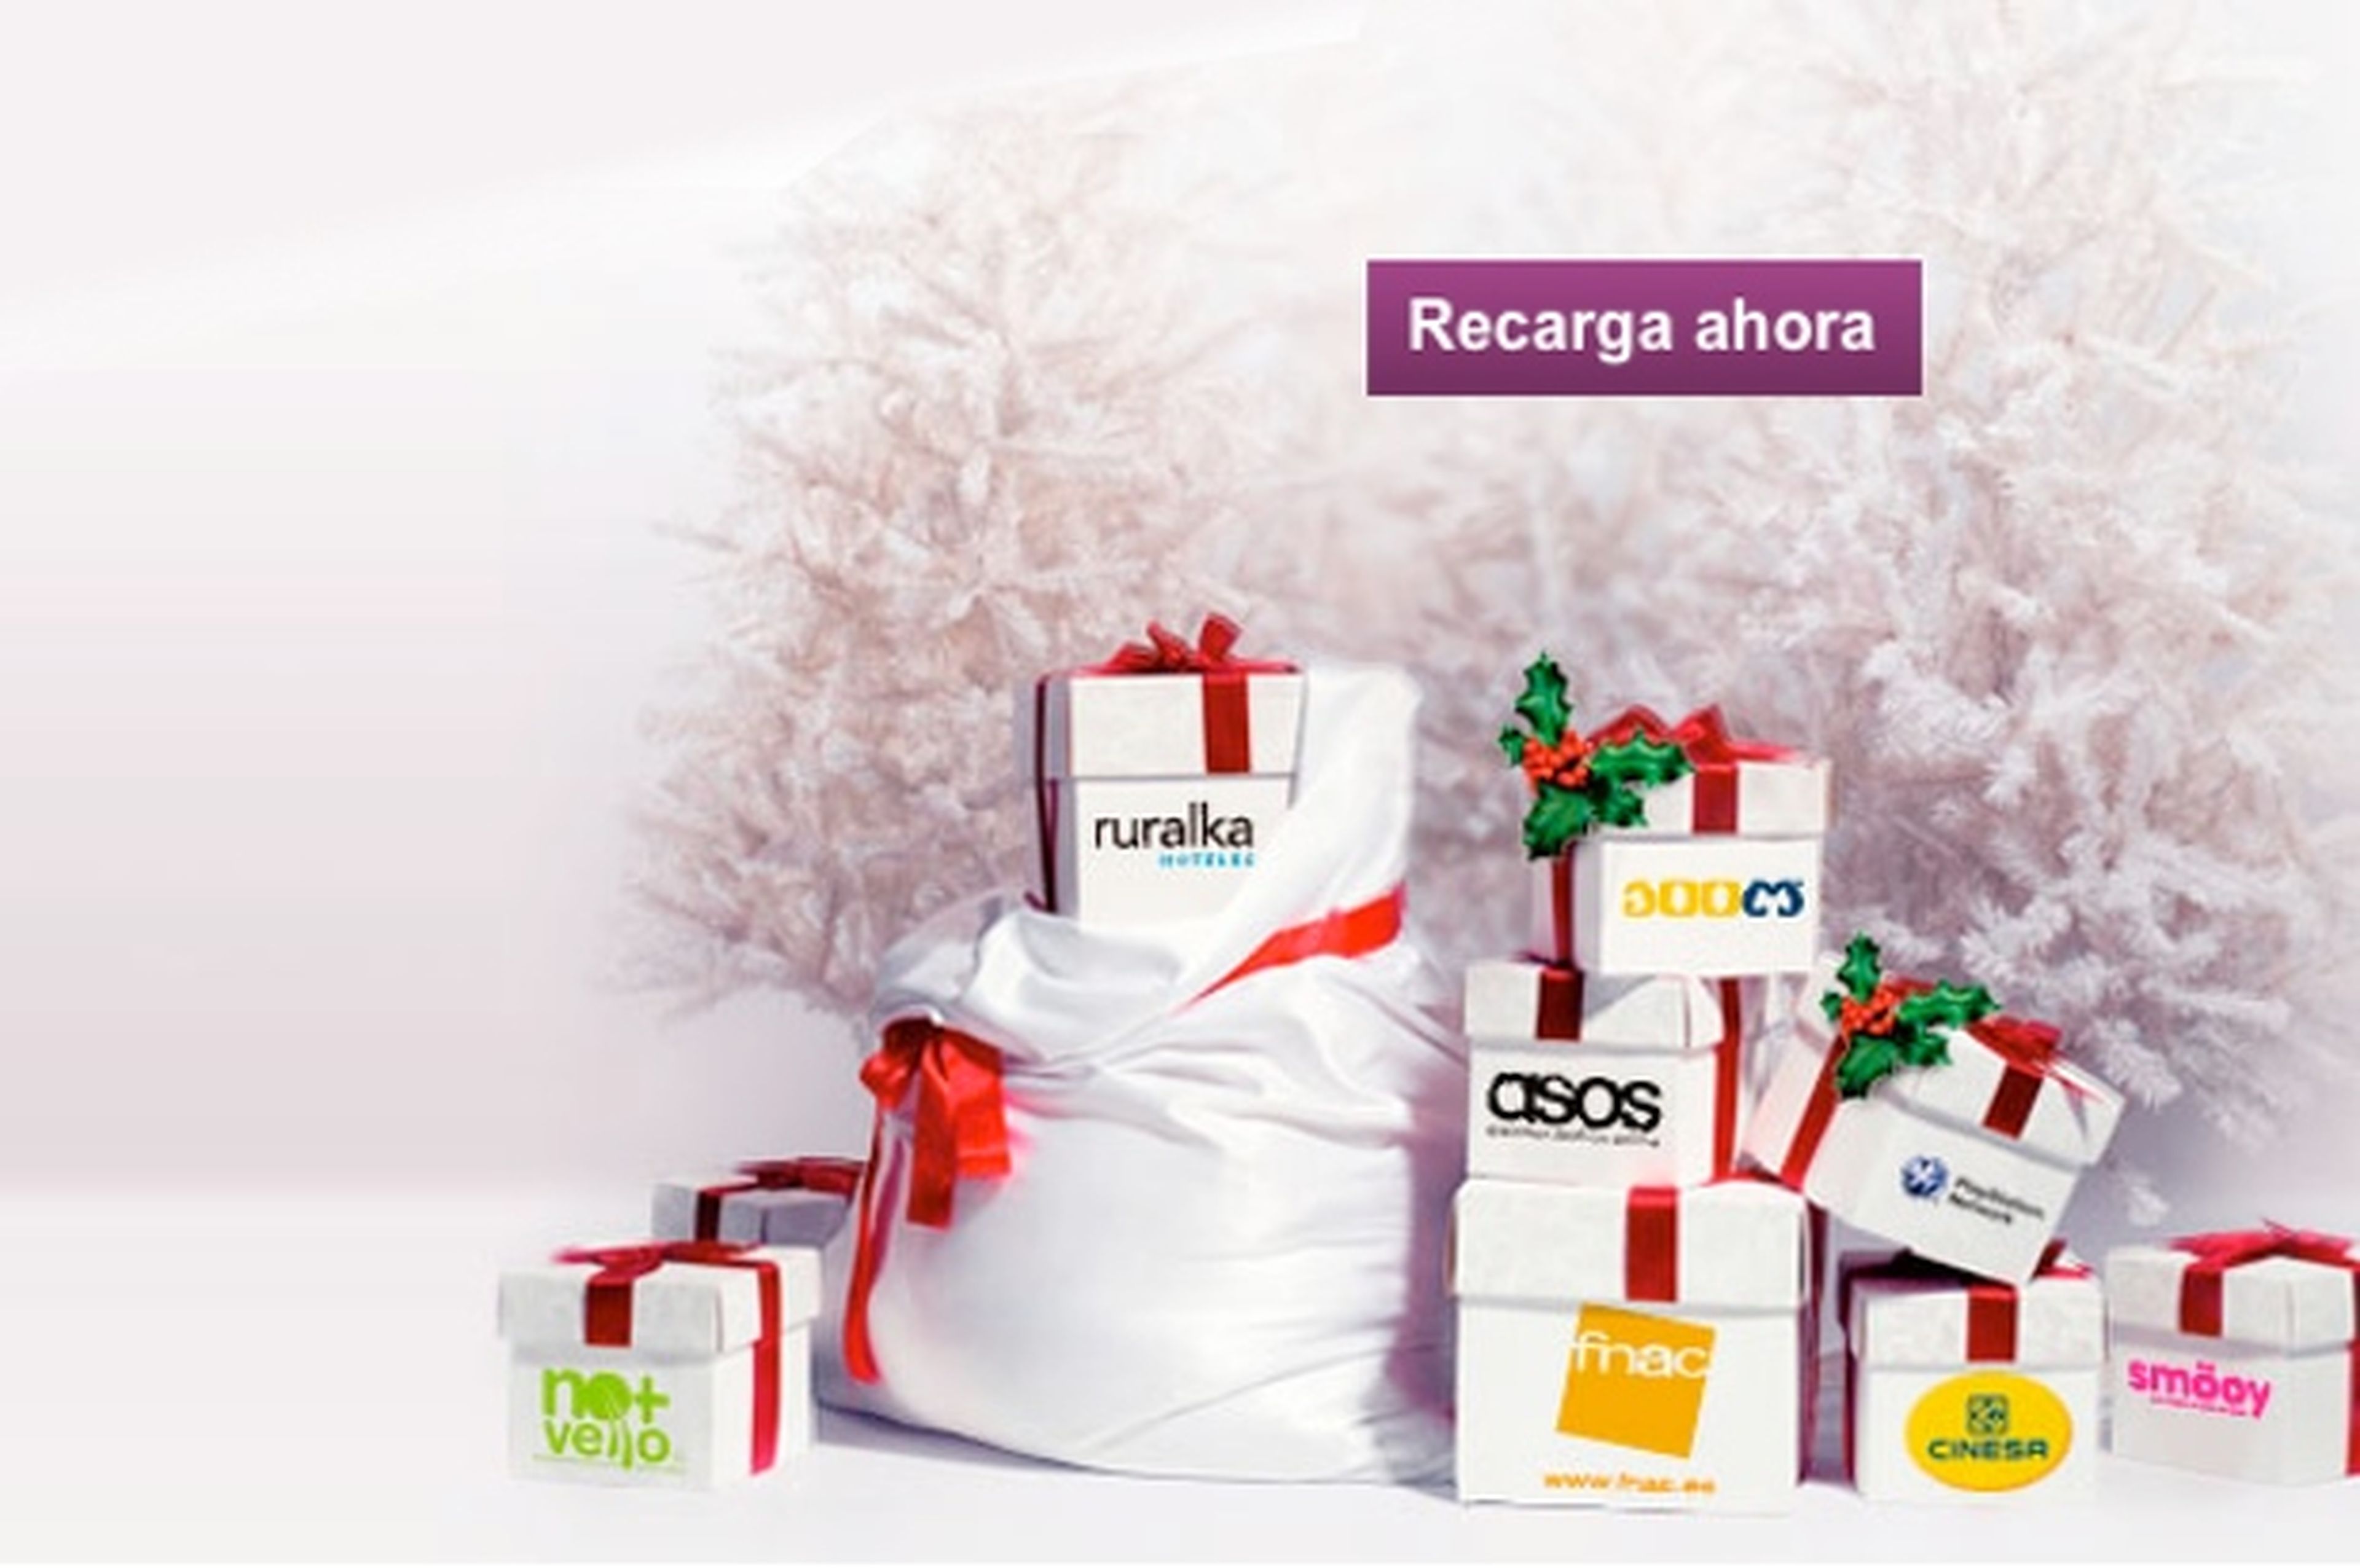 Esta Navidad, recargas con regalos de Vodafone